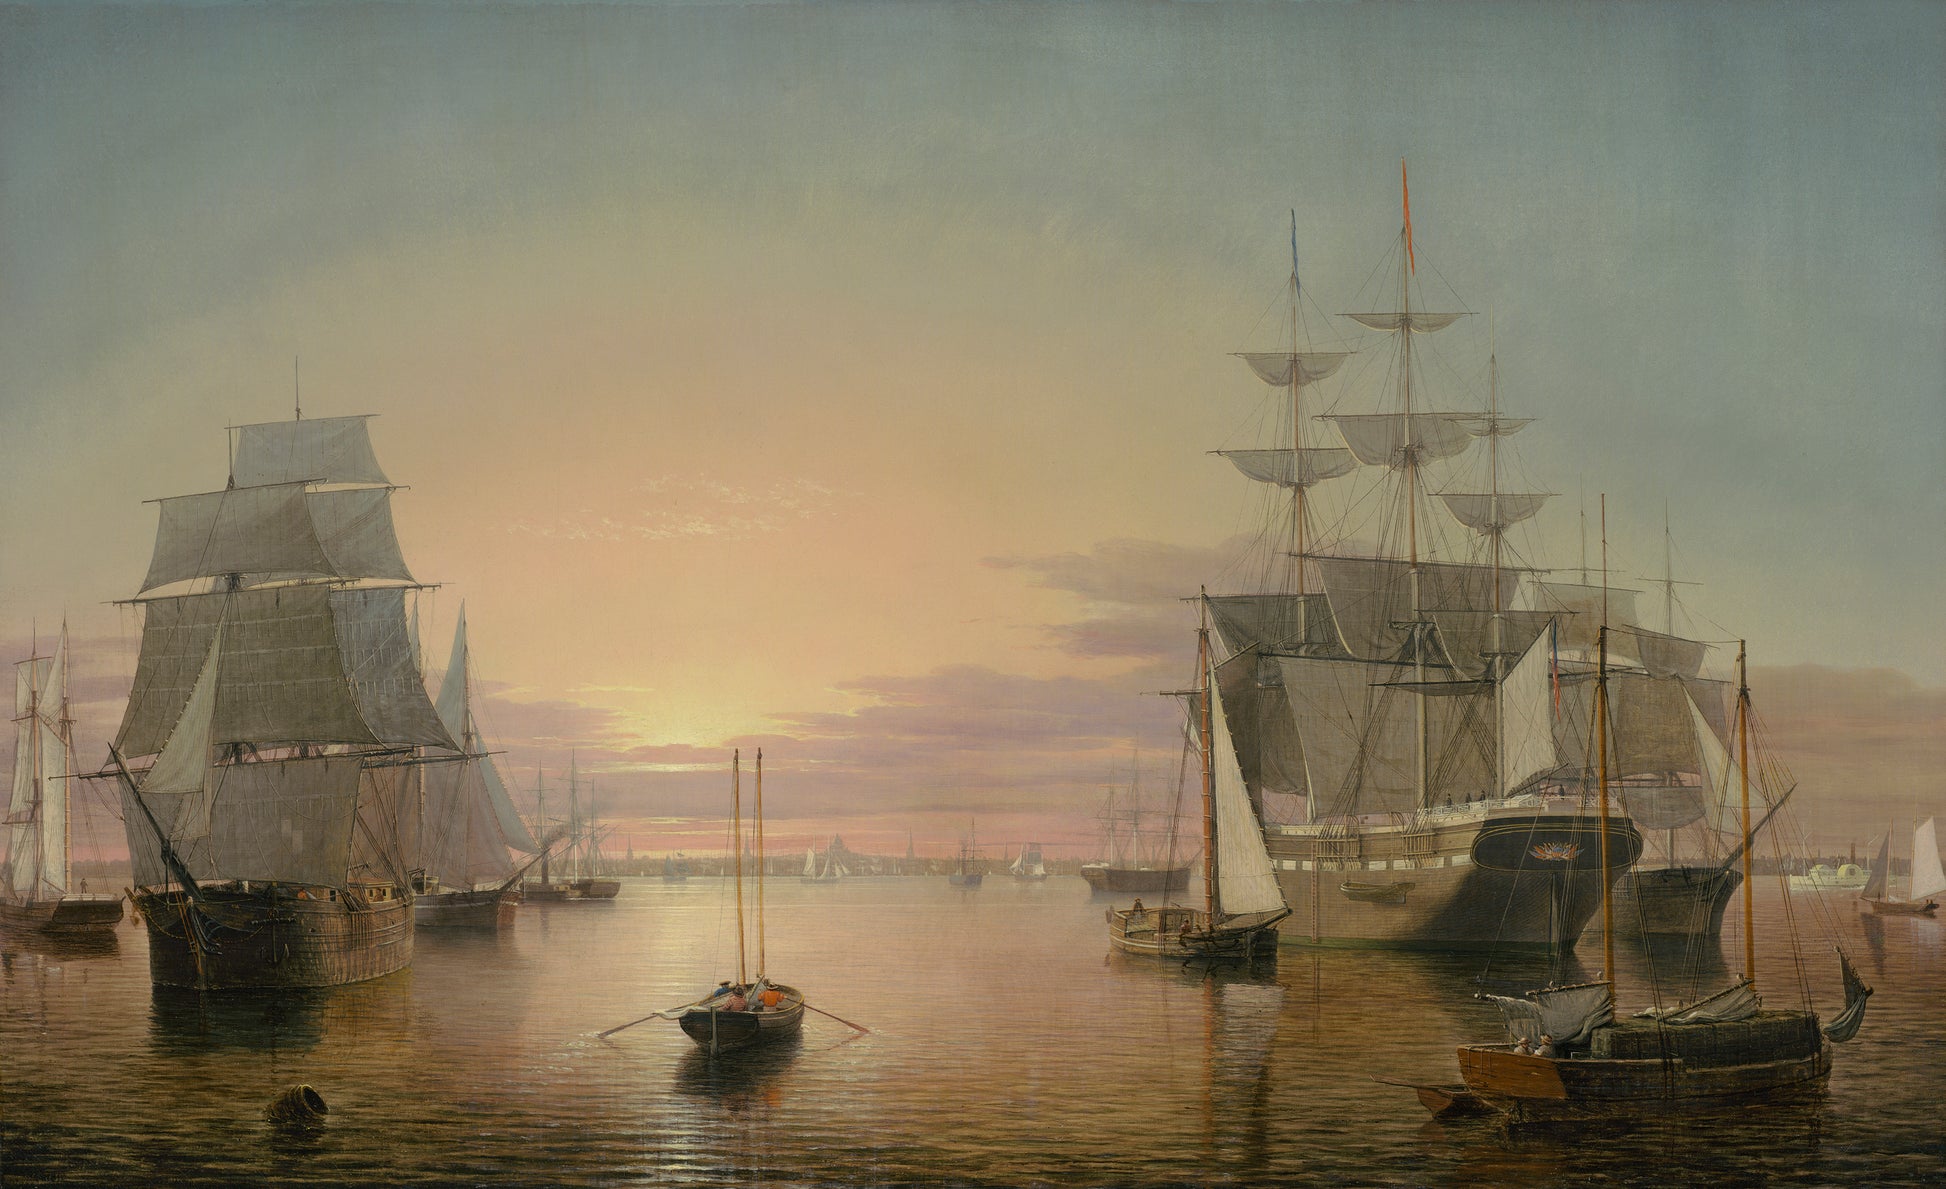 Le port de Boston au coucher du soleil, 1850 - Fitz Henry Lane